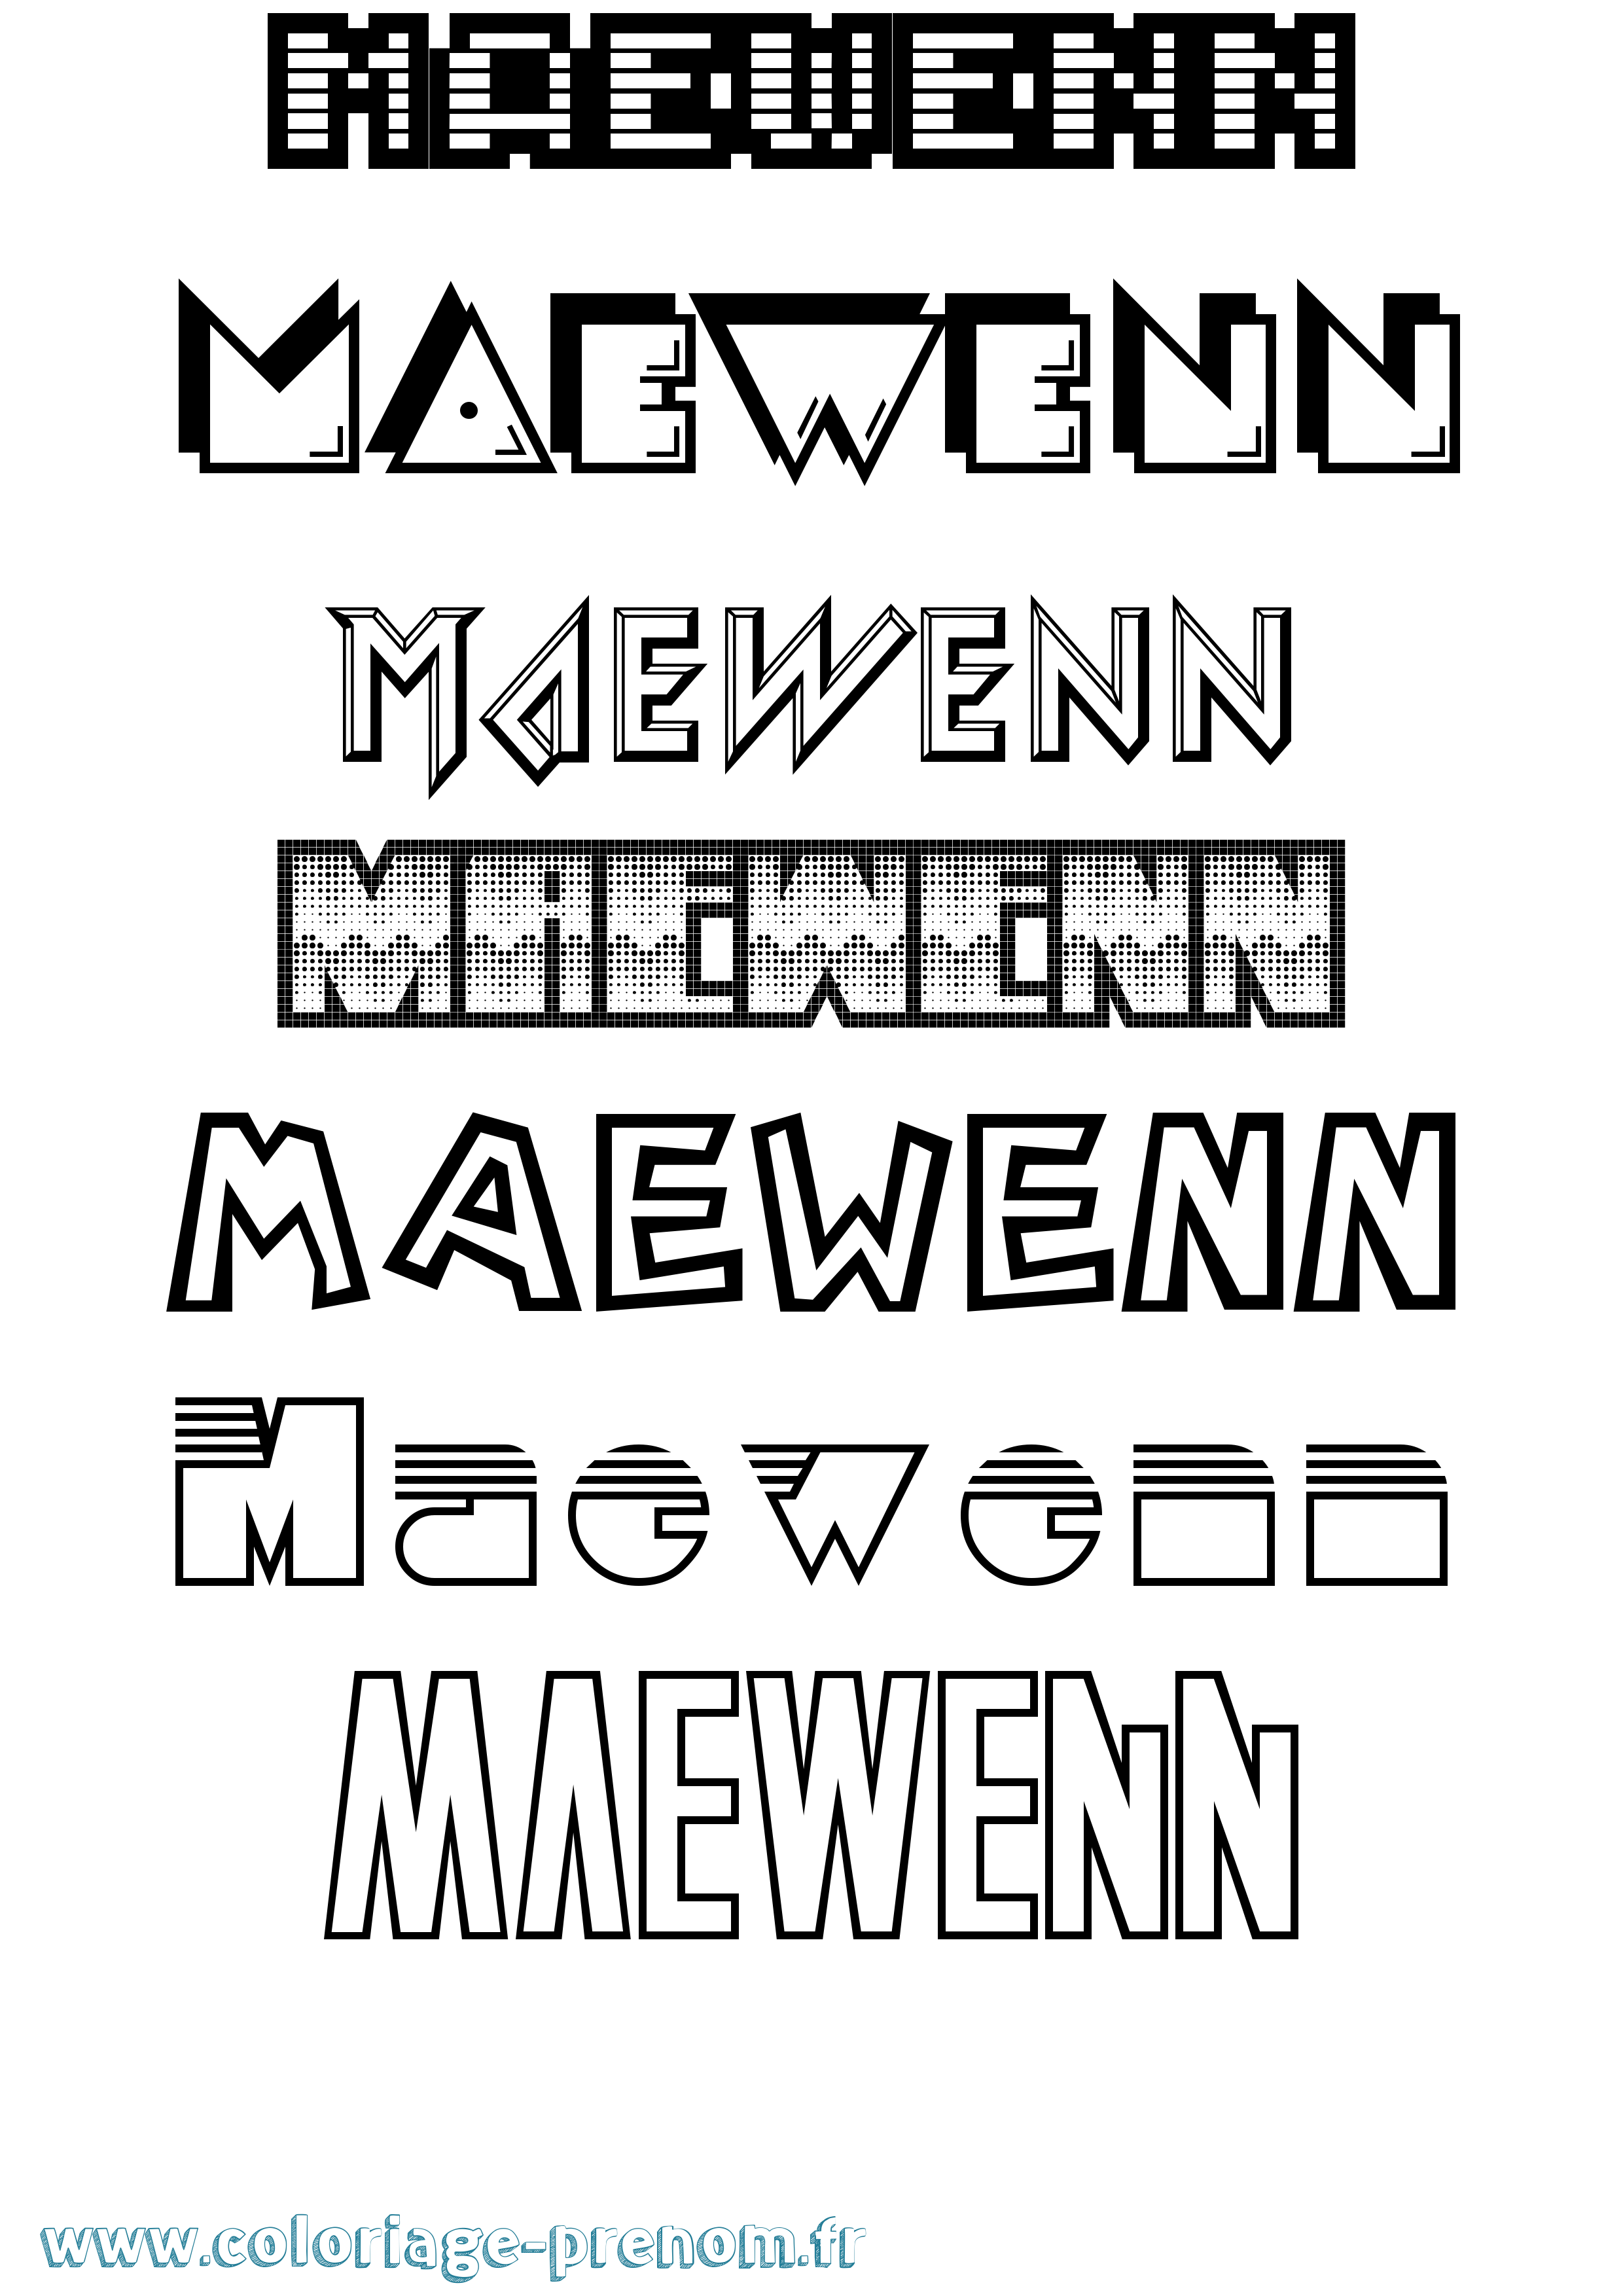 Coloriage prénom Maewenn Jeux Vidéos